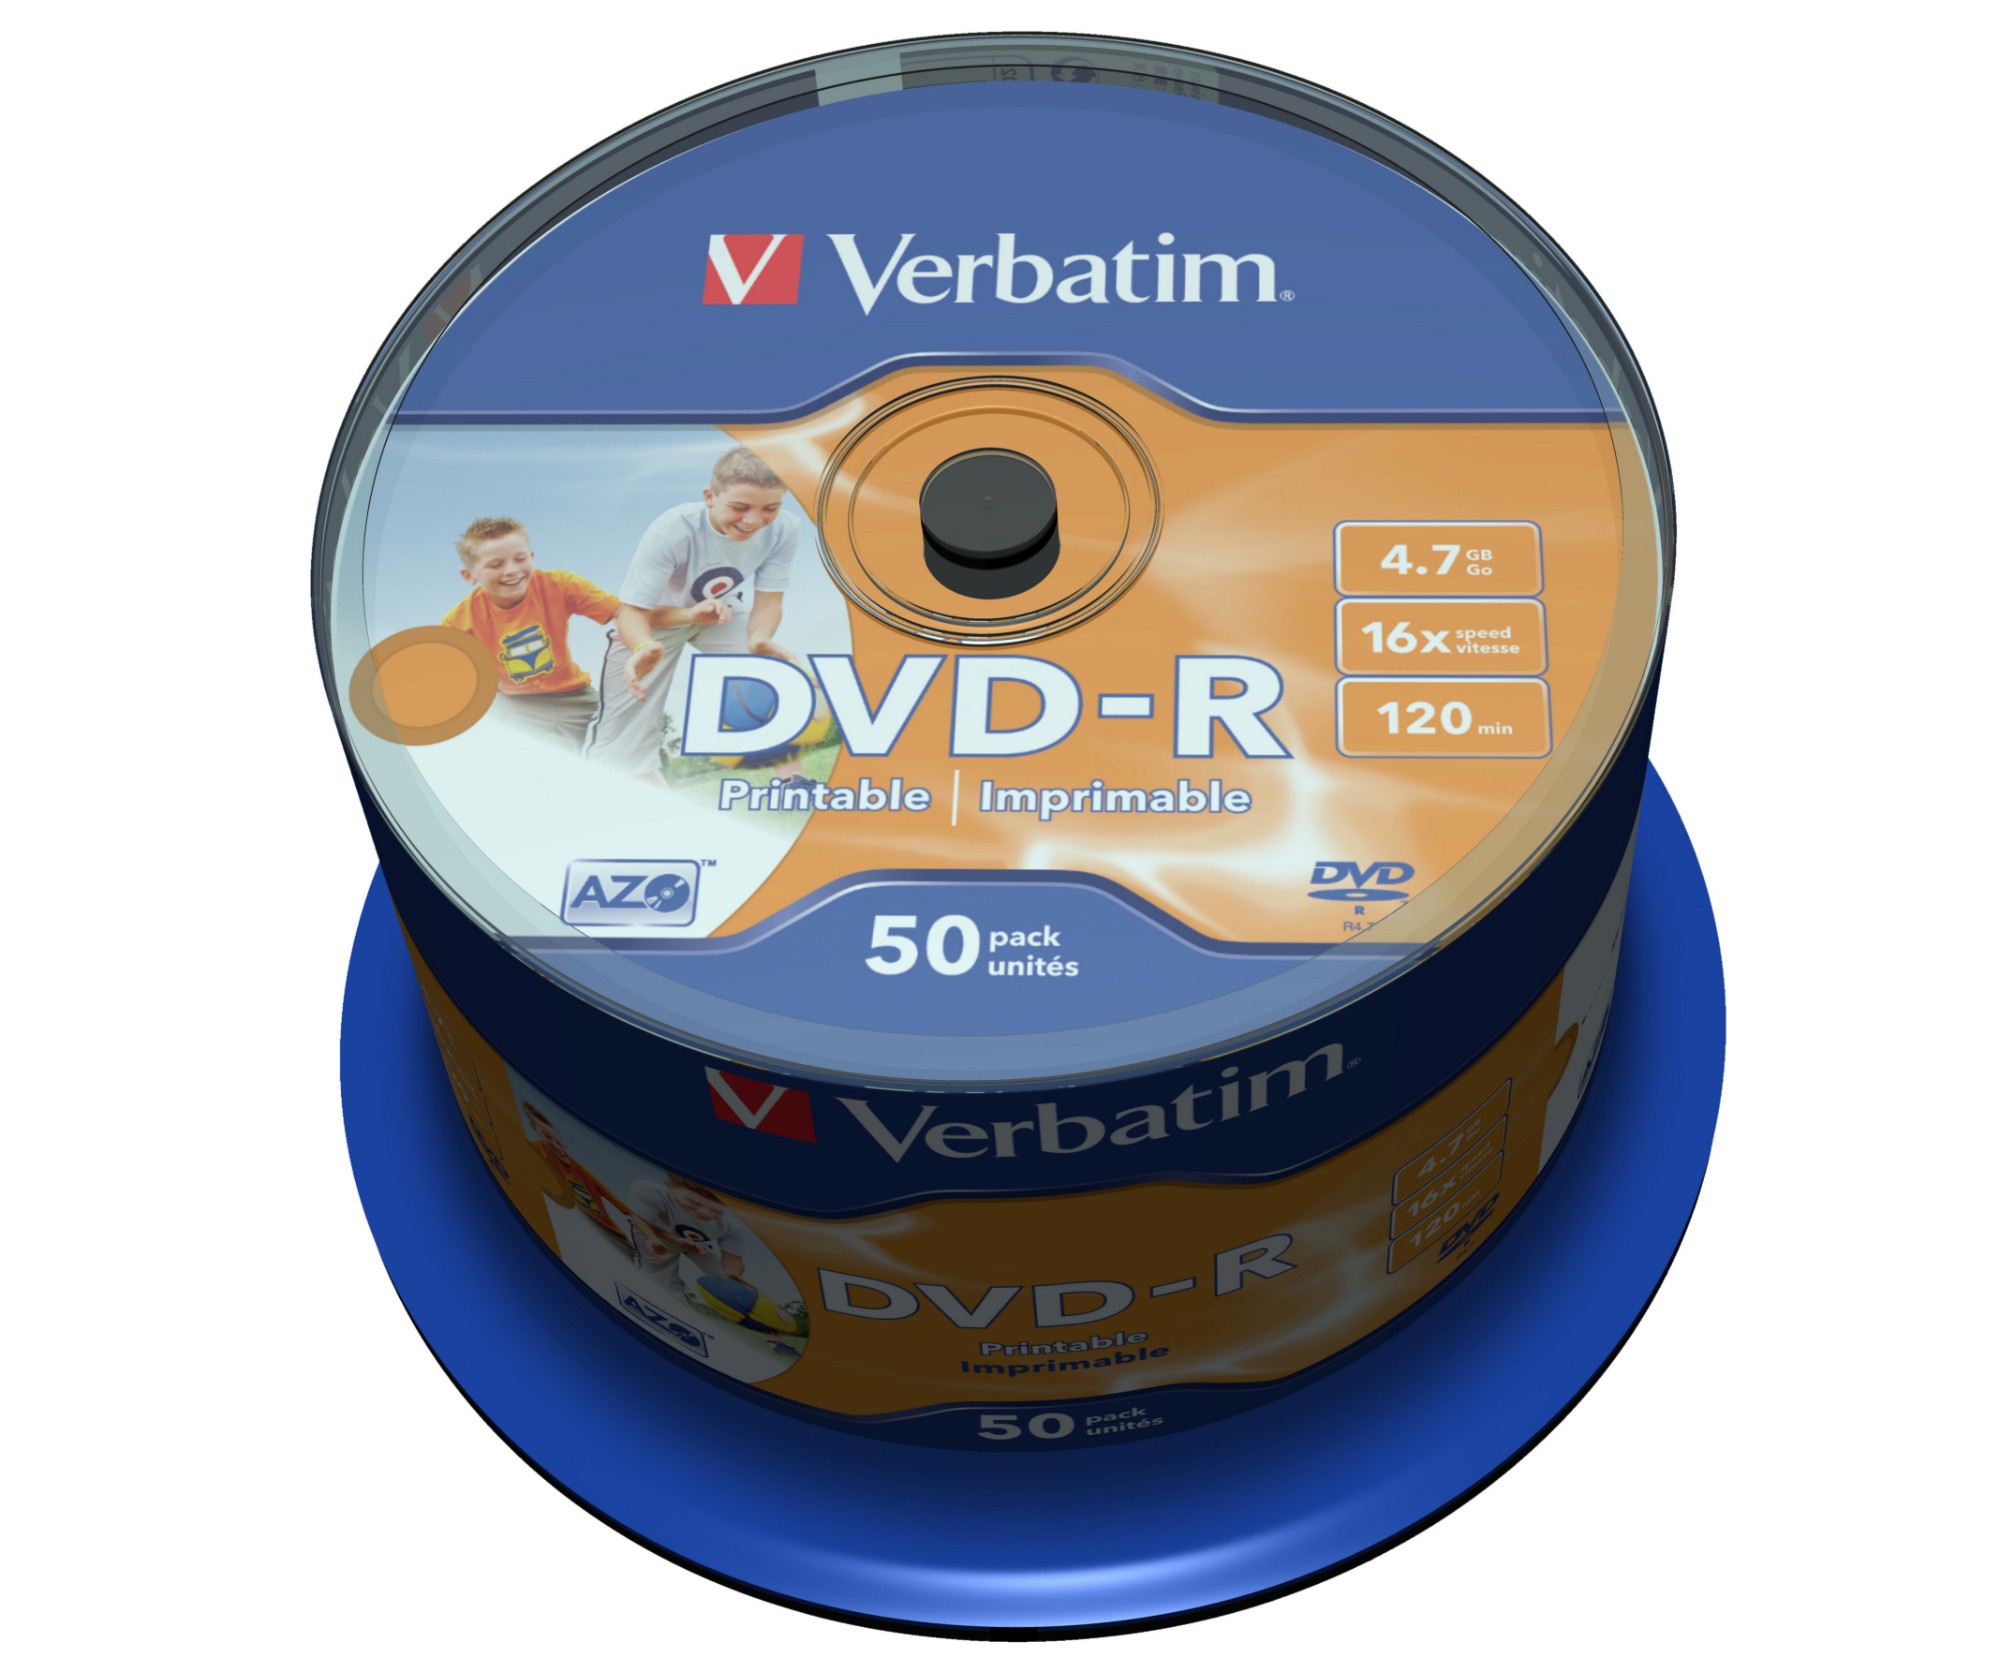 Verbatim DVD-R Spindle 4x 4.7GB (Pack of 50) 43533